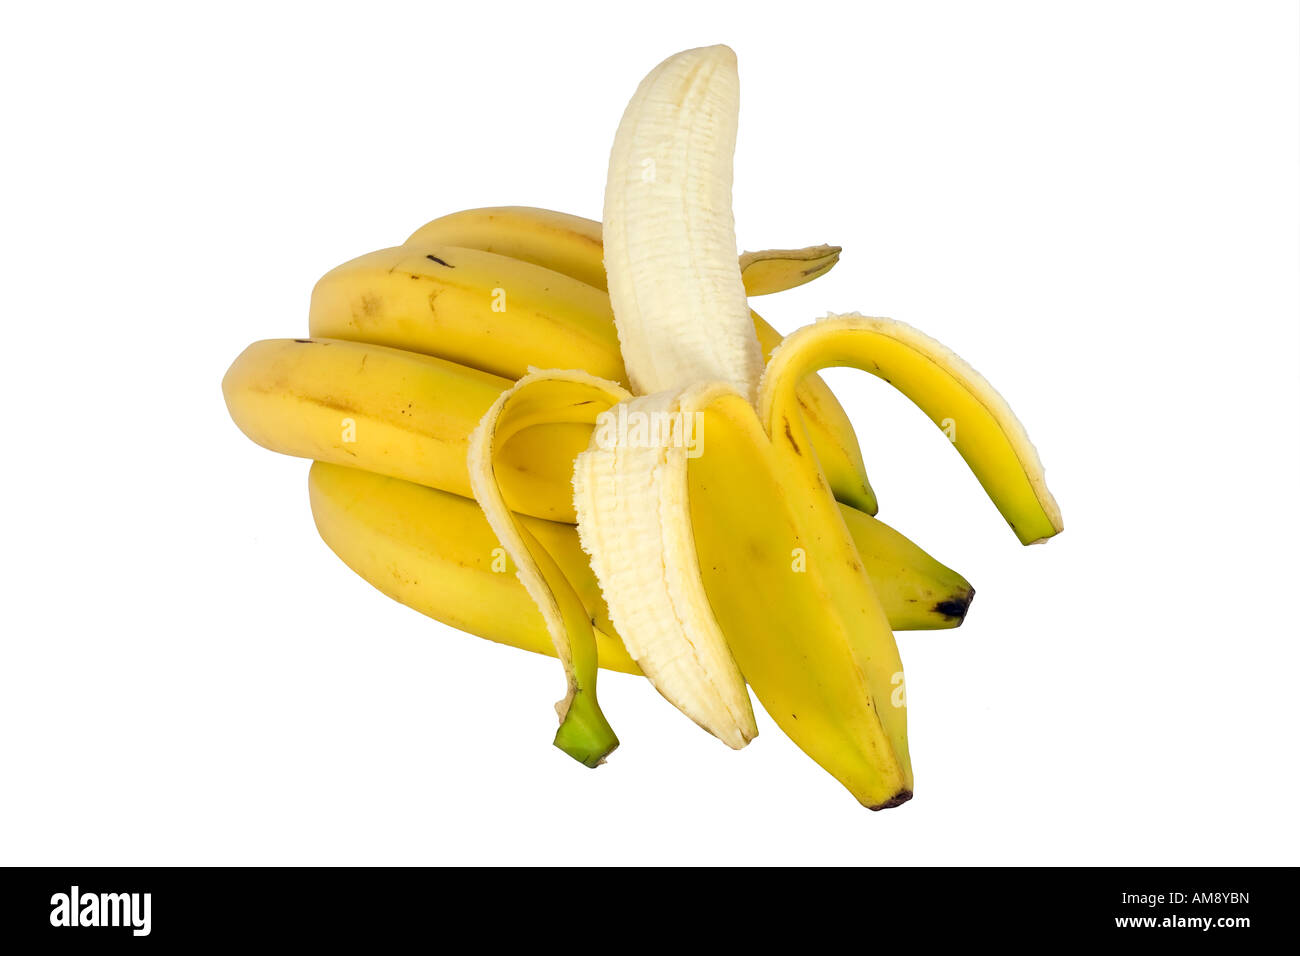 Peeled banana near a cluster of ripe bananas Stock Photo